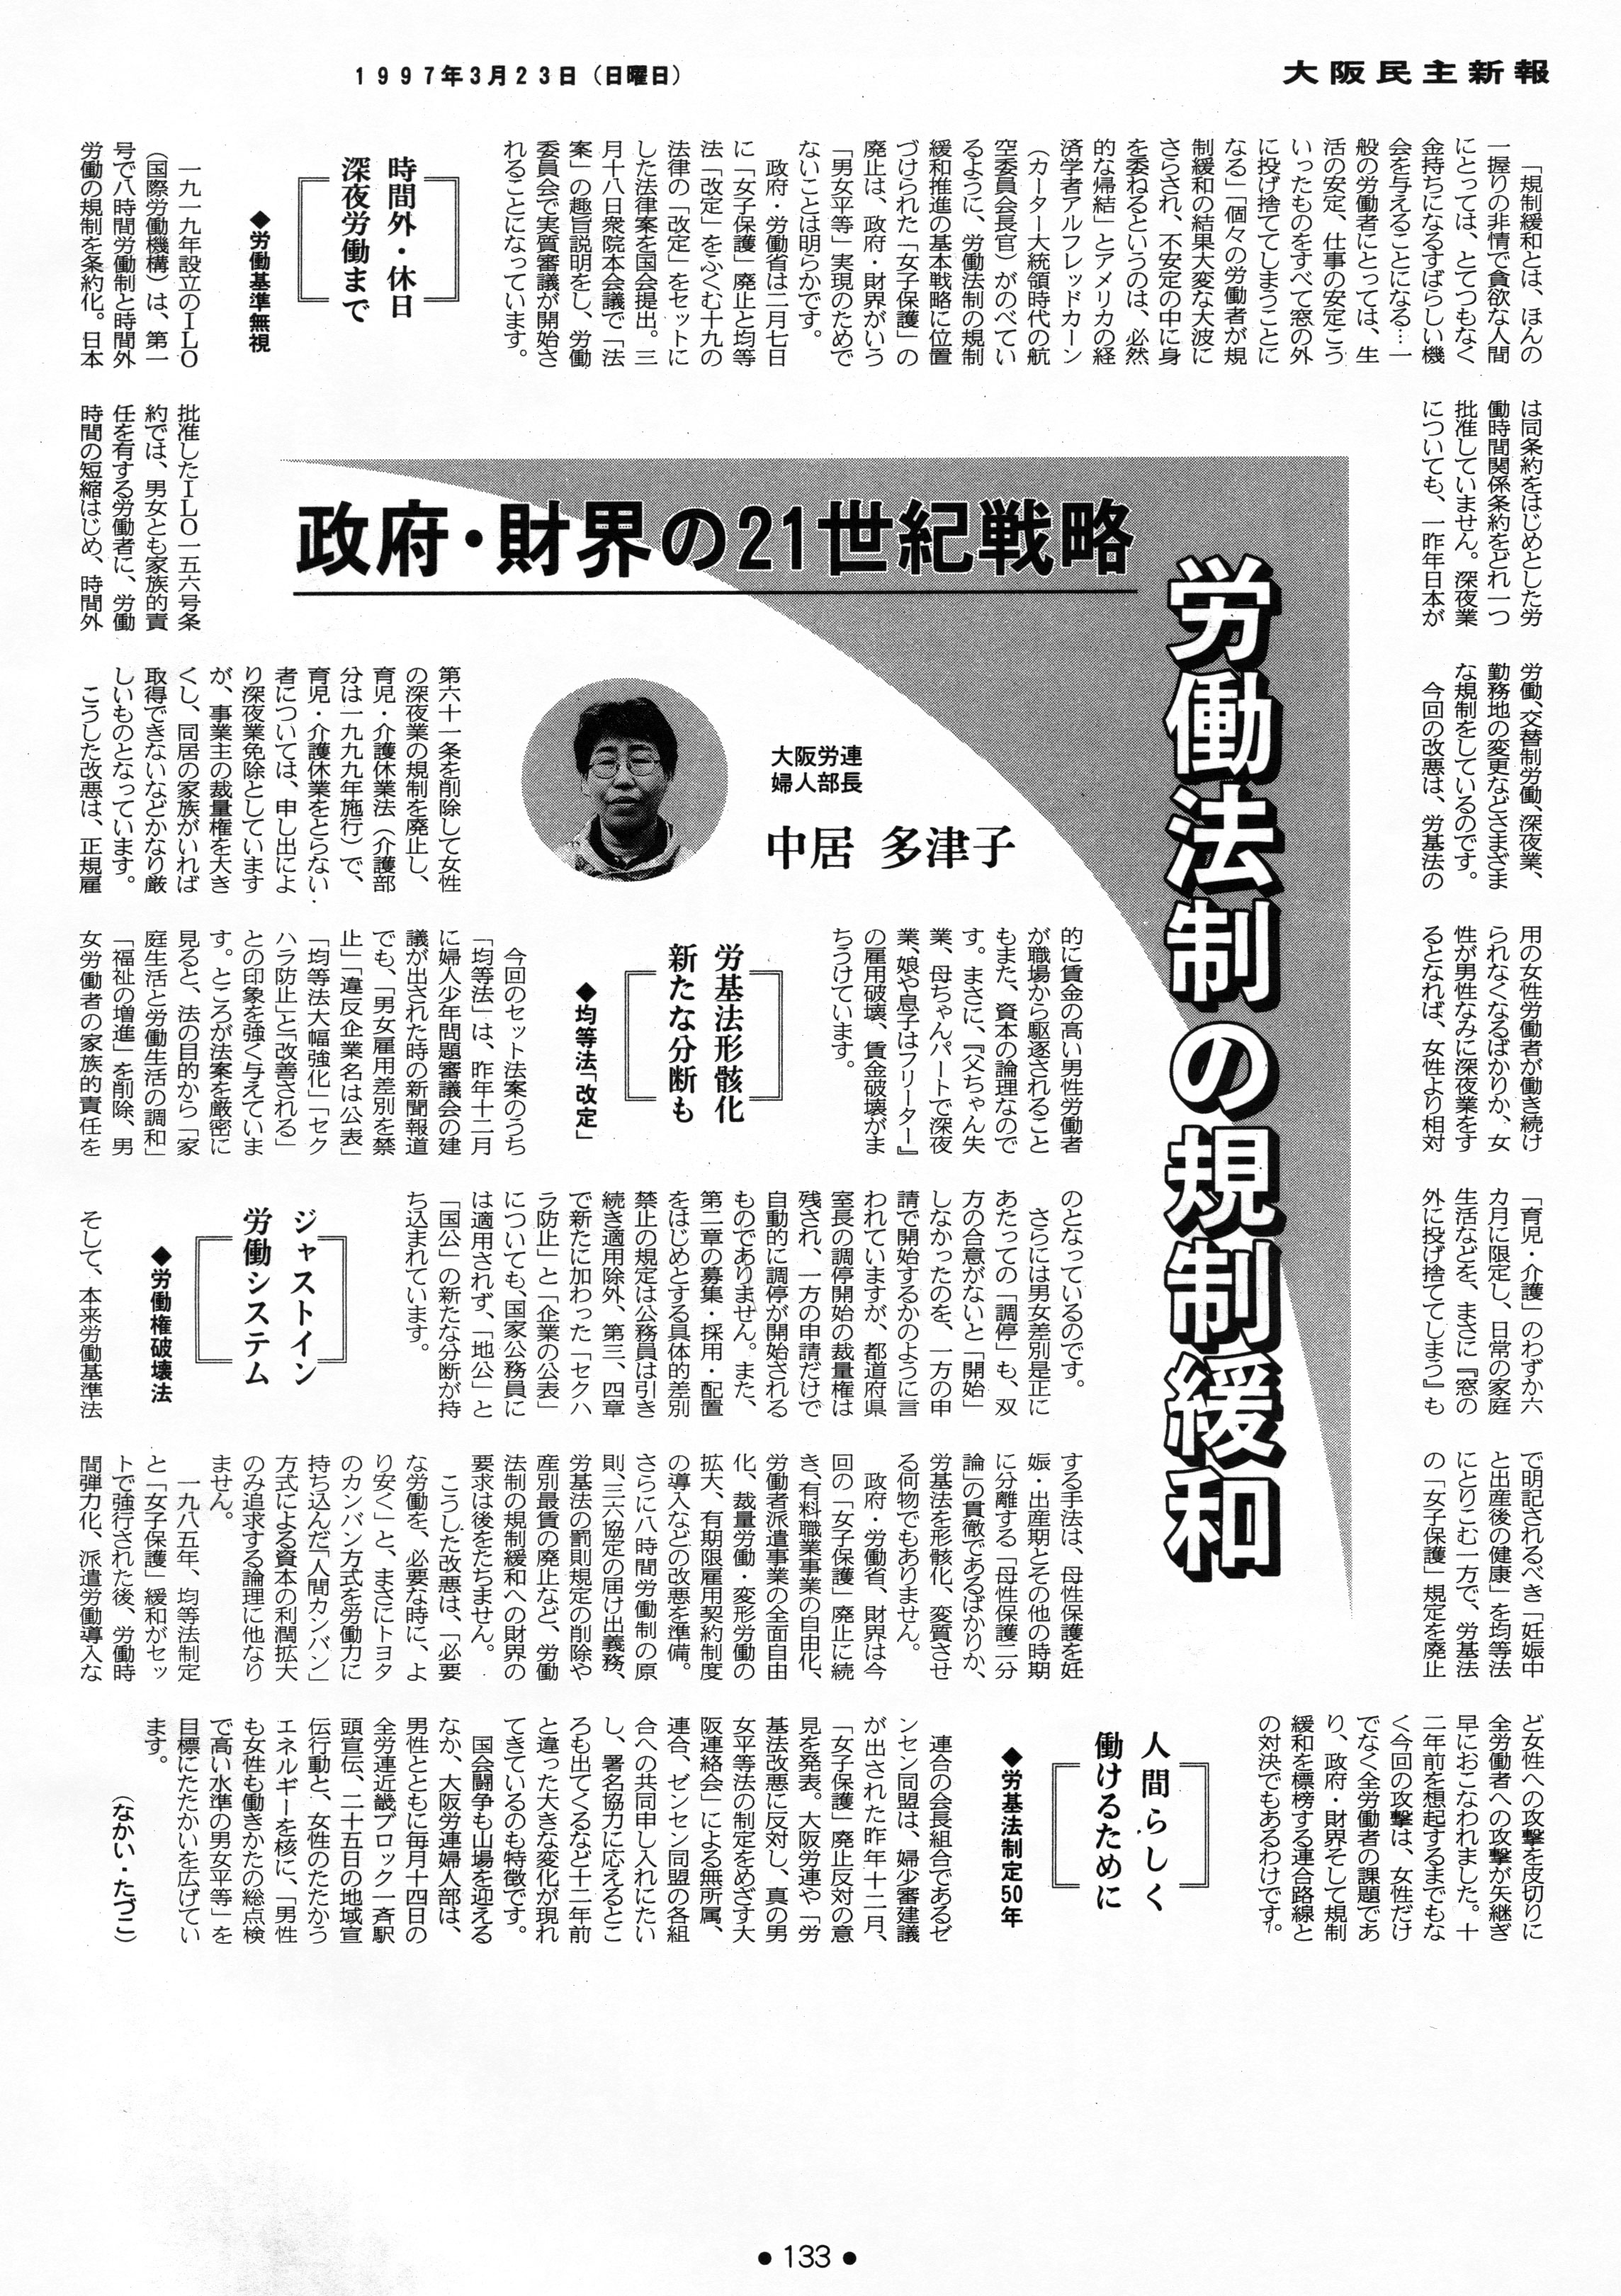 大阪婦人労働者問題資料室 - 1997年 新聞記事 ～政府・財界の２１世紀戦略 労働法制の規制緩和～